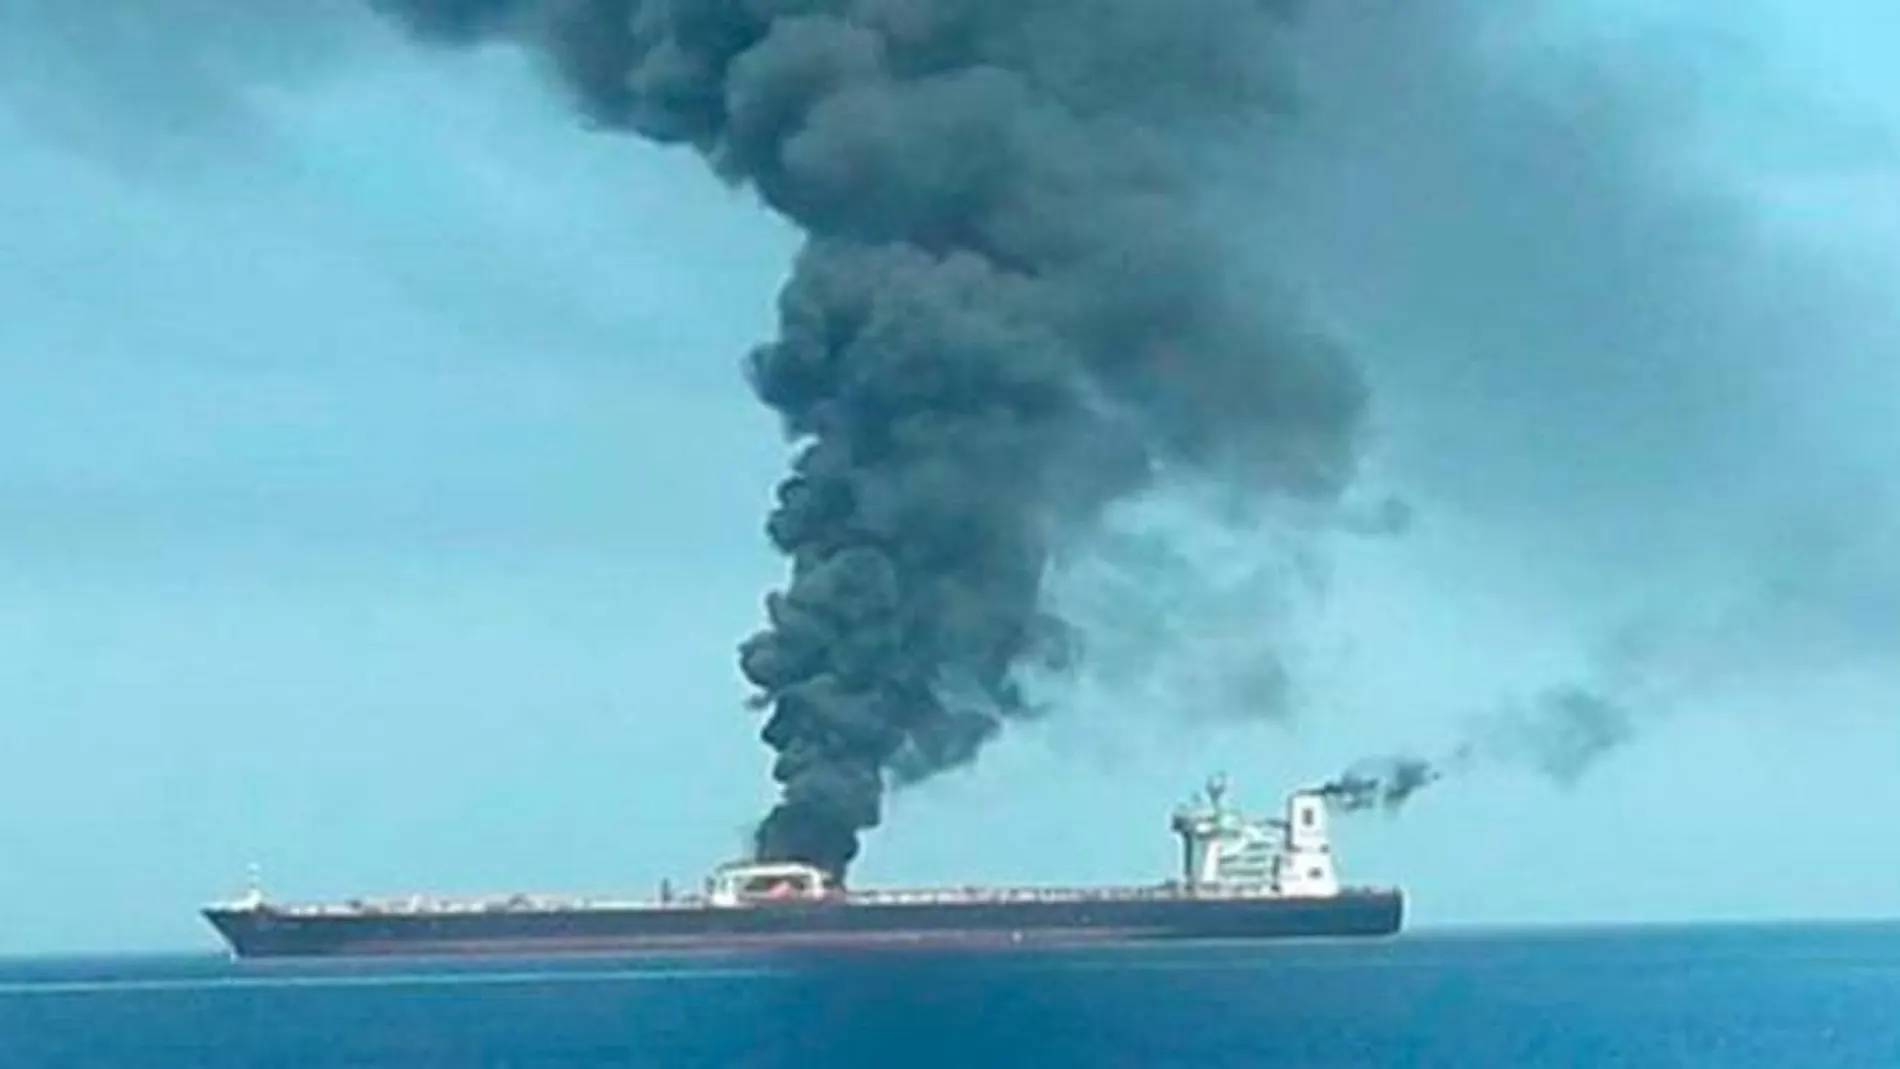 Imagen de Iribnews del petrolero iraní atacado